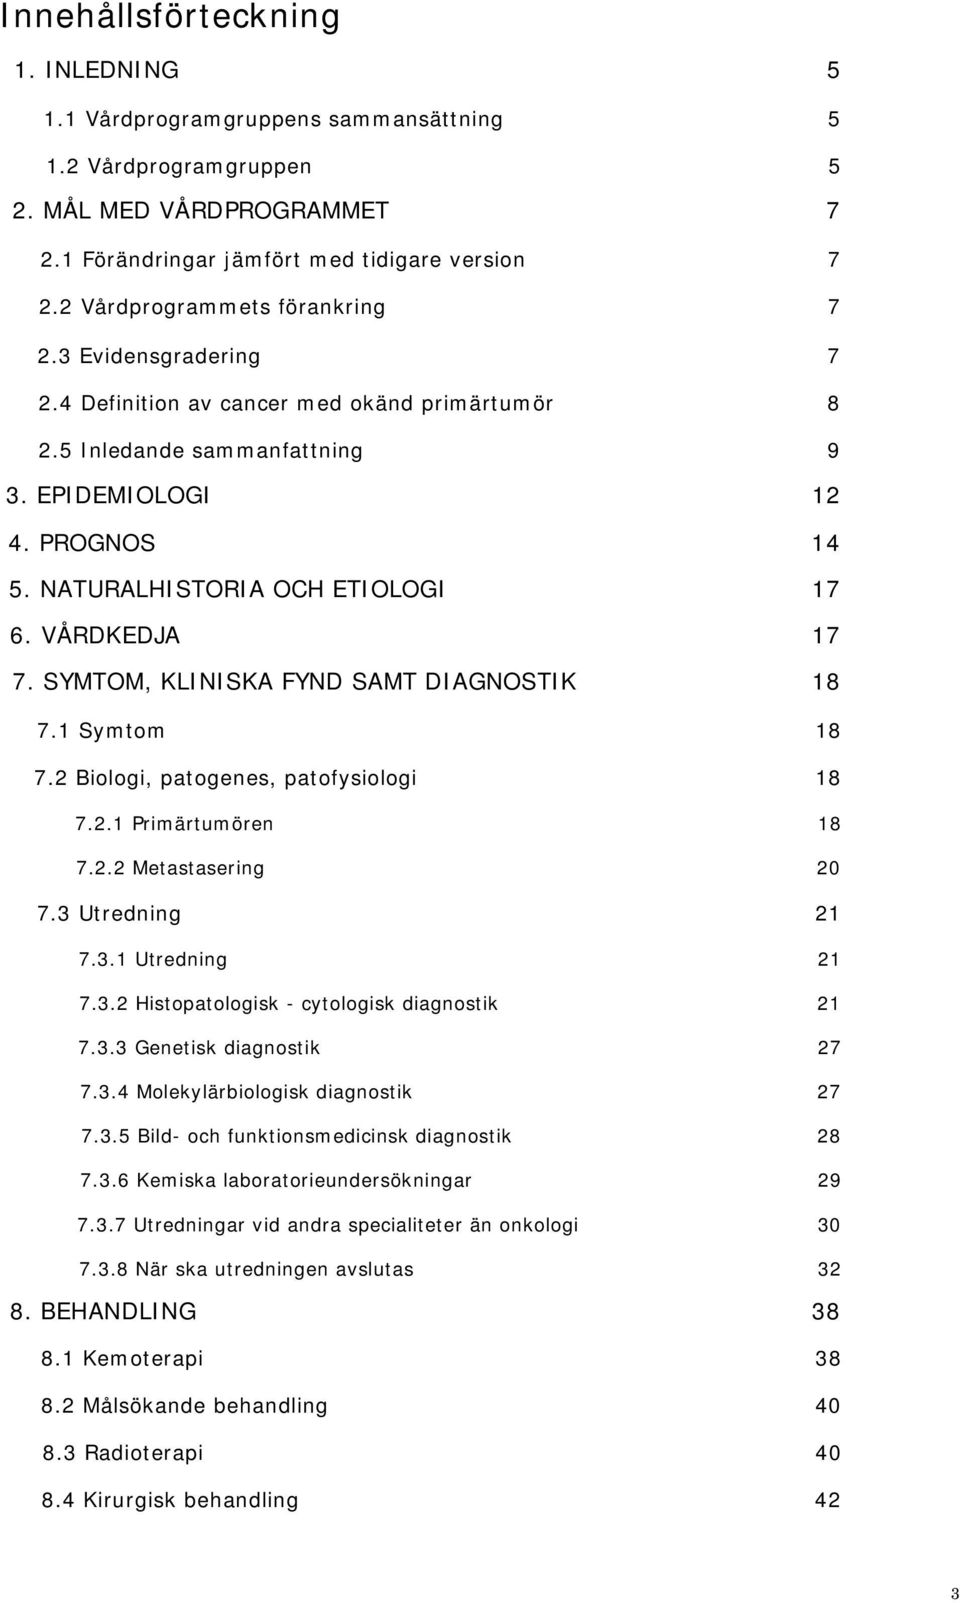 NATURALHISTORIA OCH ETIOLOGI 17 6. VÅRDKEDJA 17 7. SYMTOM, KLINISKA FYND SAMT DIAGNOSTIK 18 7.1 Symtom 18 7.2 Biologi, patogenes, patofysiologi 18 7.2.1 Primärtumören 18 7.2.2 Metastasering 20 7.